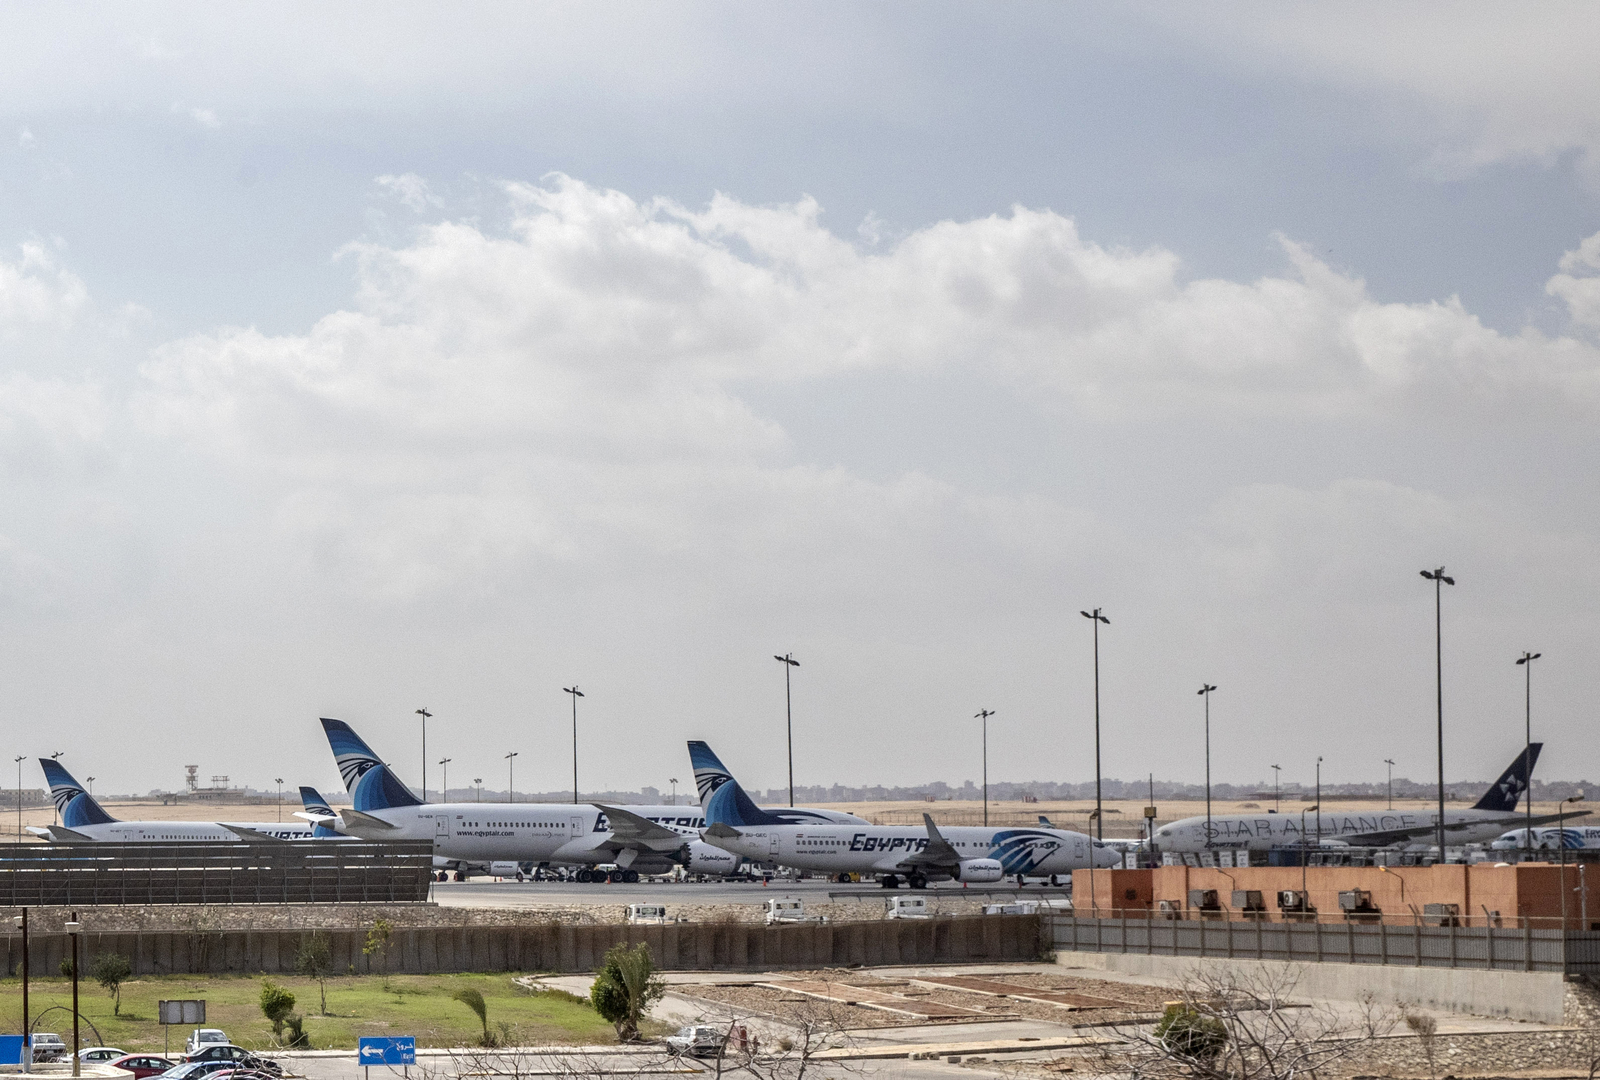 أول شركة طيران فى الشرق الأوسط وإفريقيا تحتفل بعيدها الـ90 (صور)